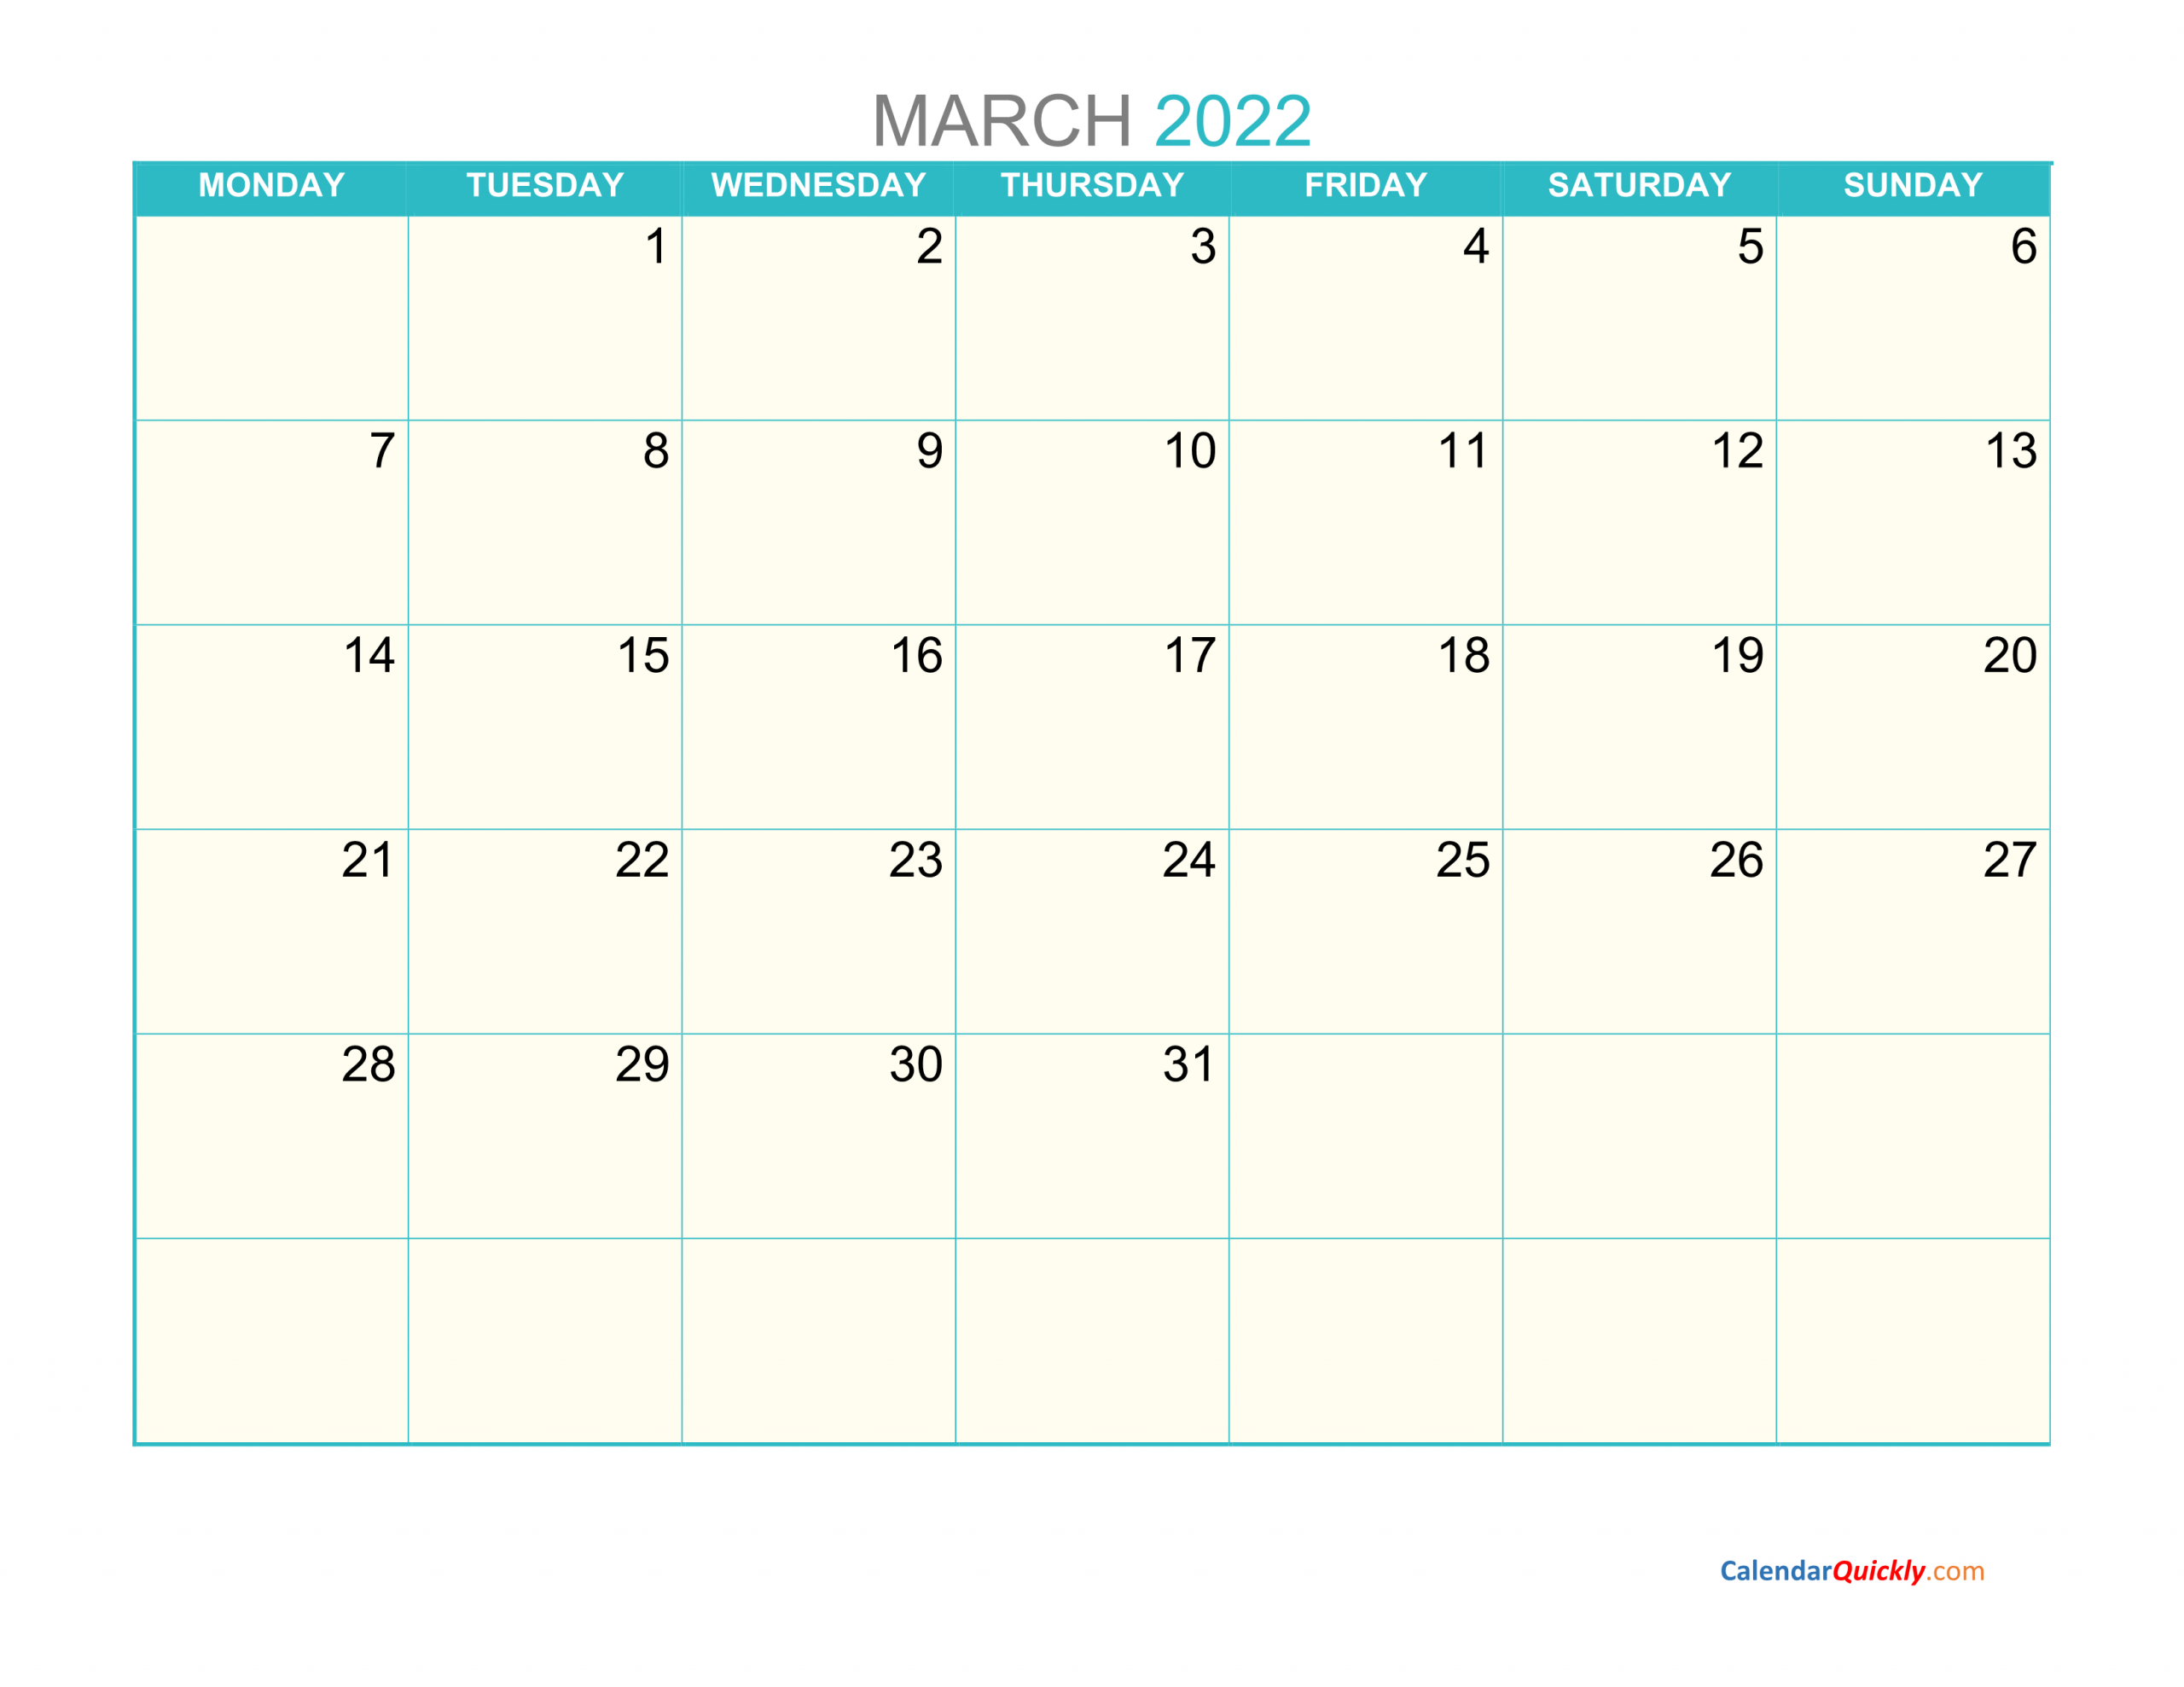 March Monday 2022 Calendar Printable Calendar Quickly